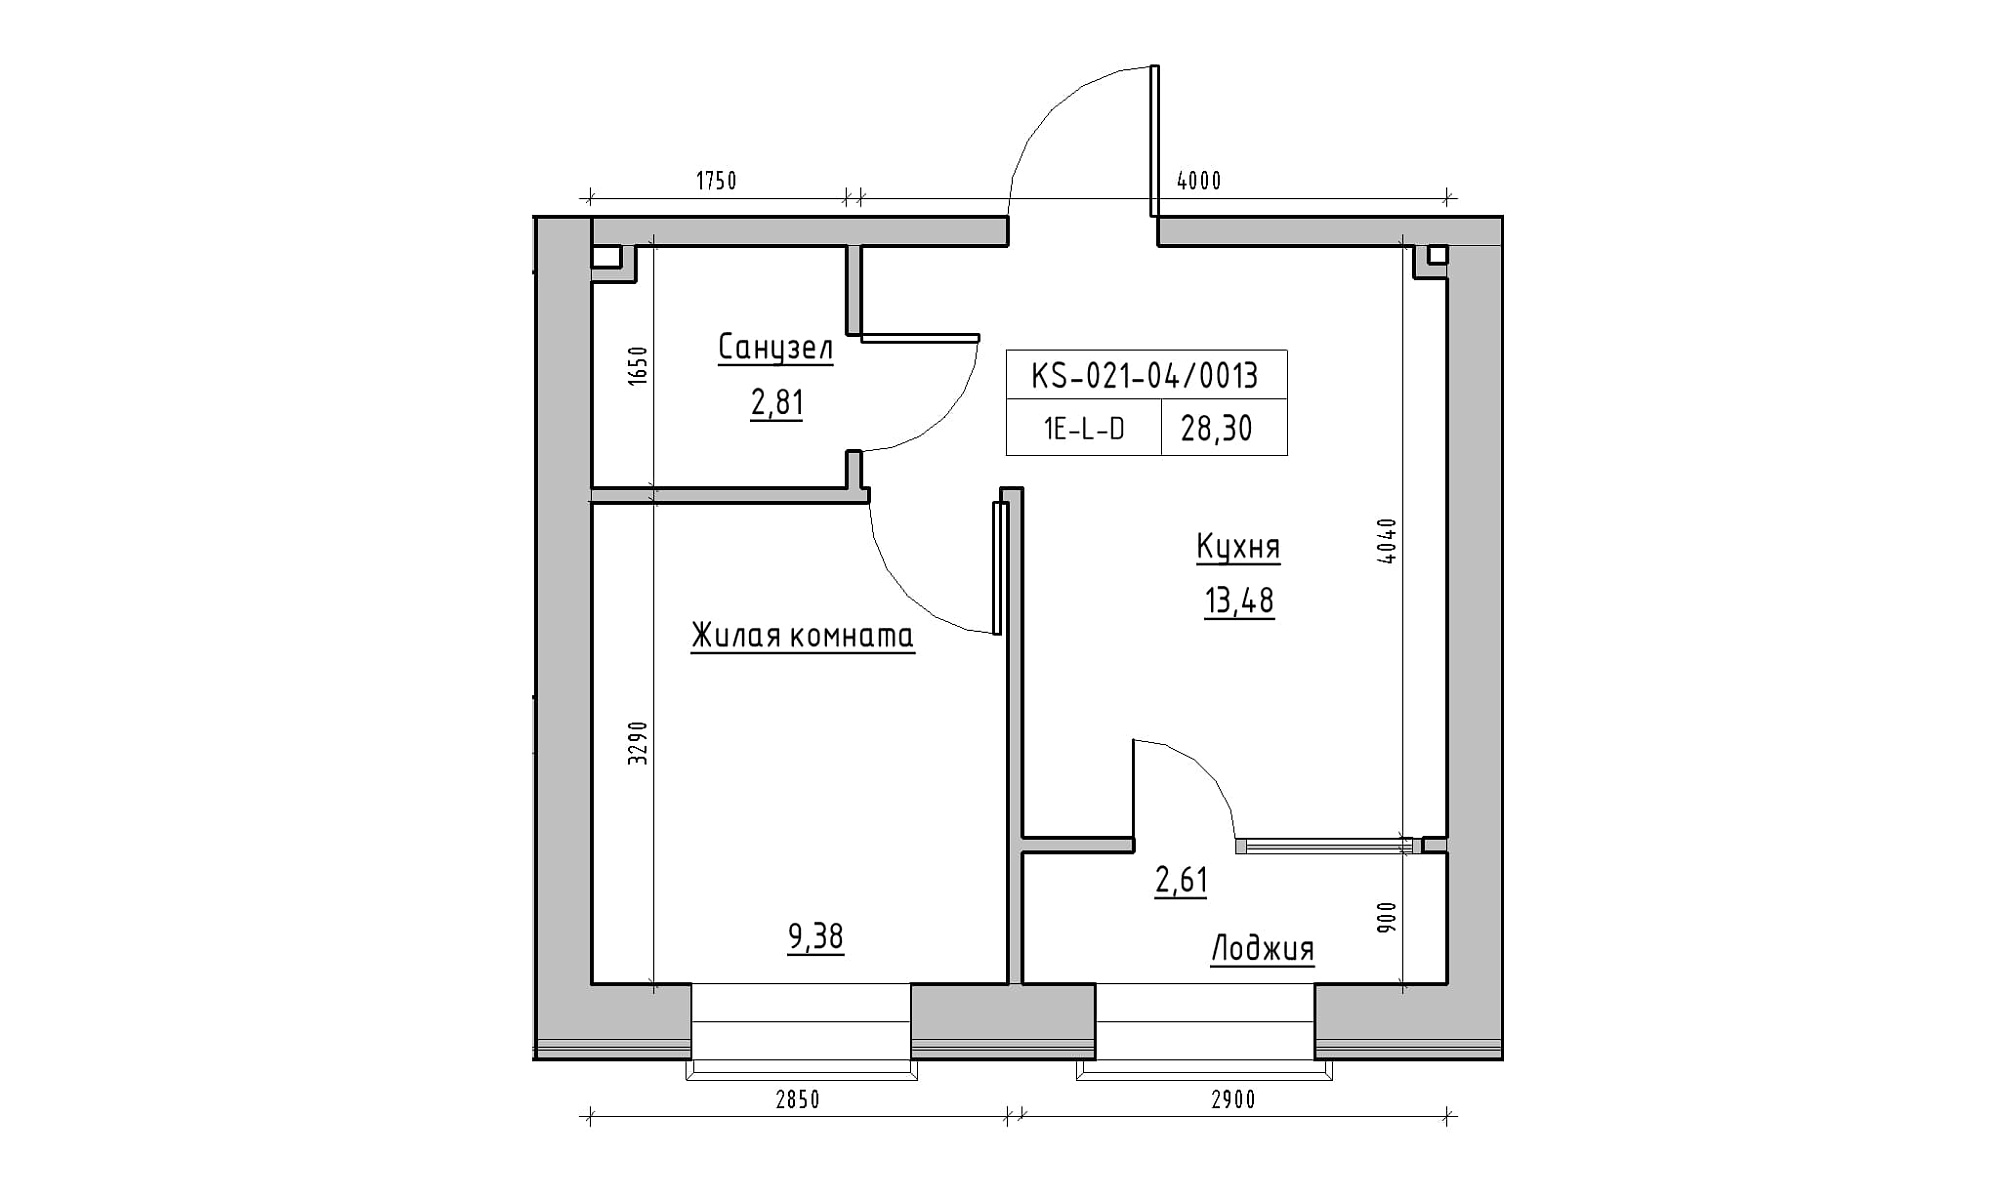 Планировка 1-к квартира площей 28.3м2, KS-021-04/0013.